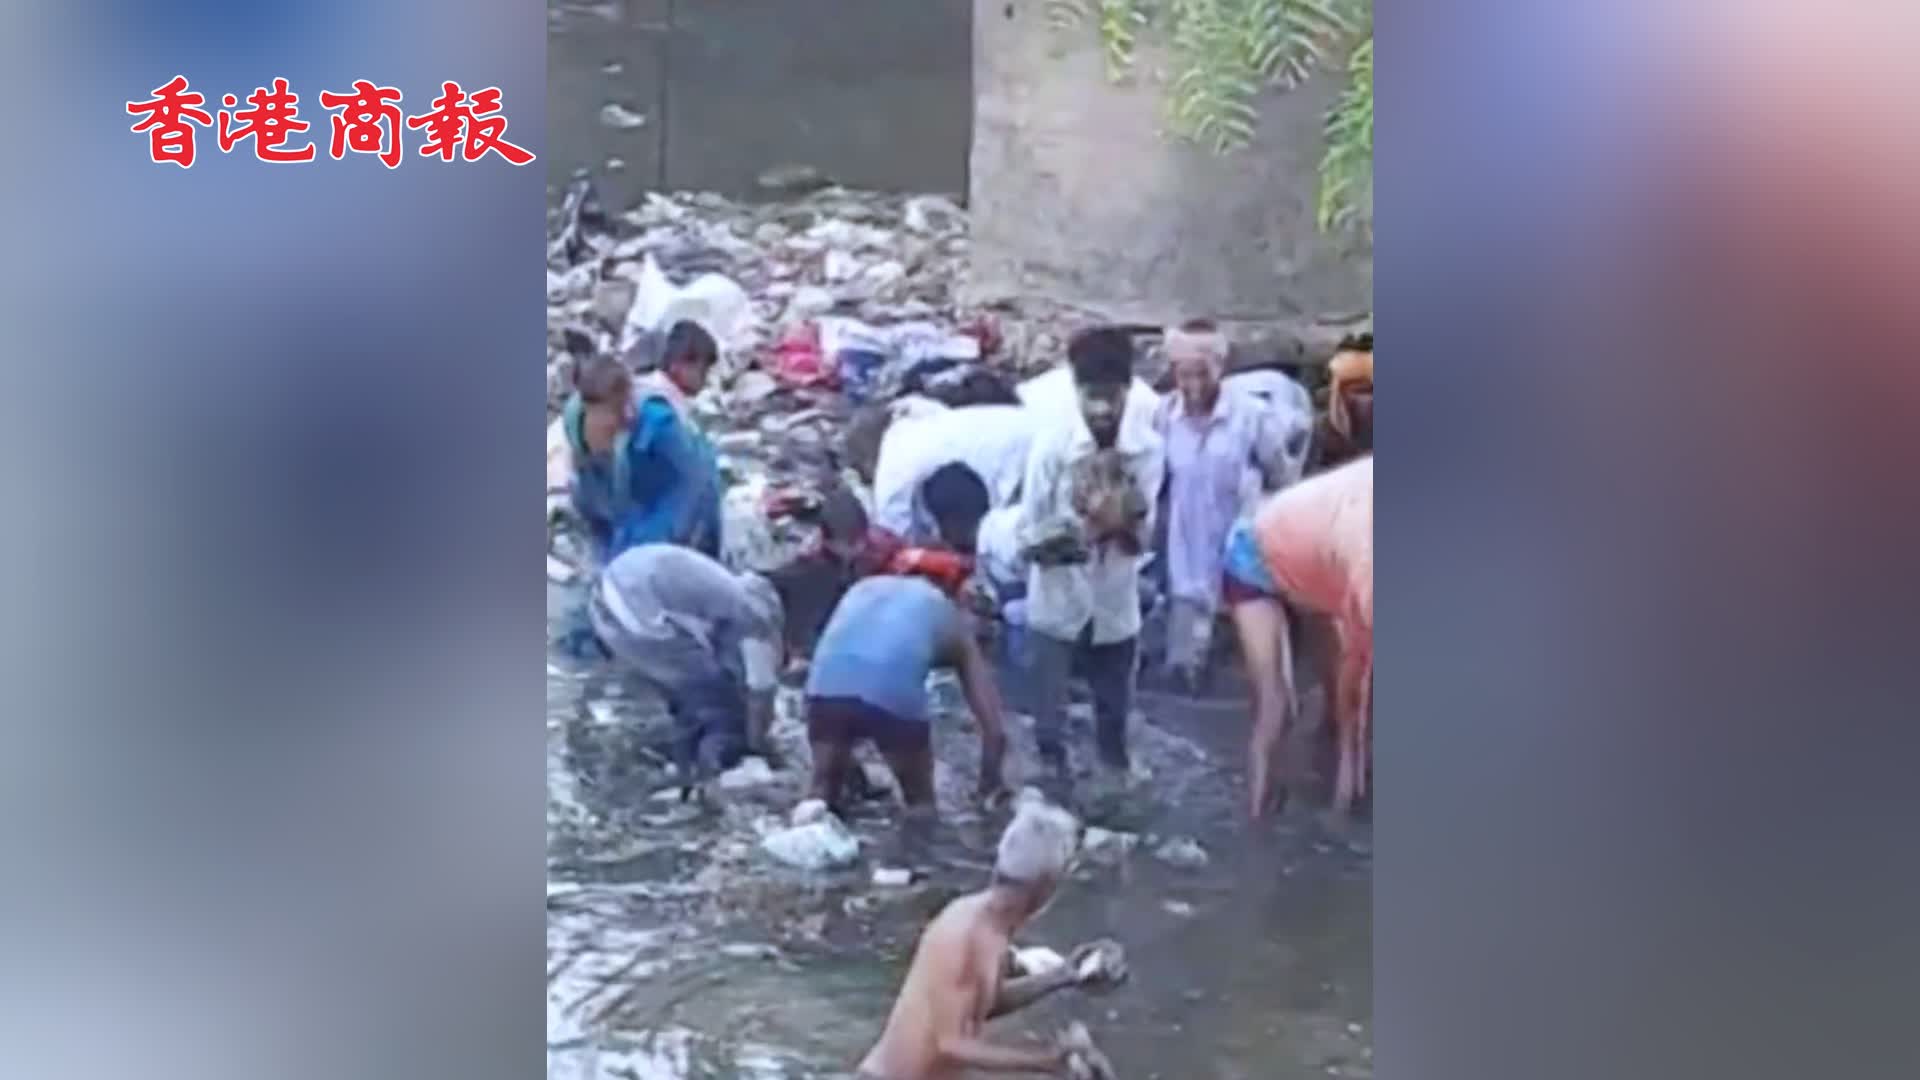 有片 | 印度一河溝被人扔下幾十萬盧比現金 居民跳進河哄搶撈錢